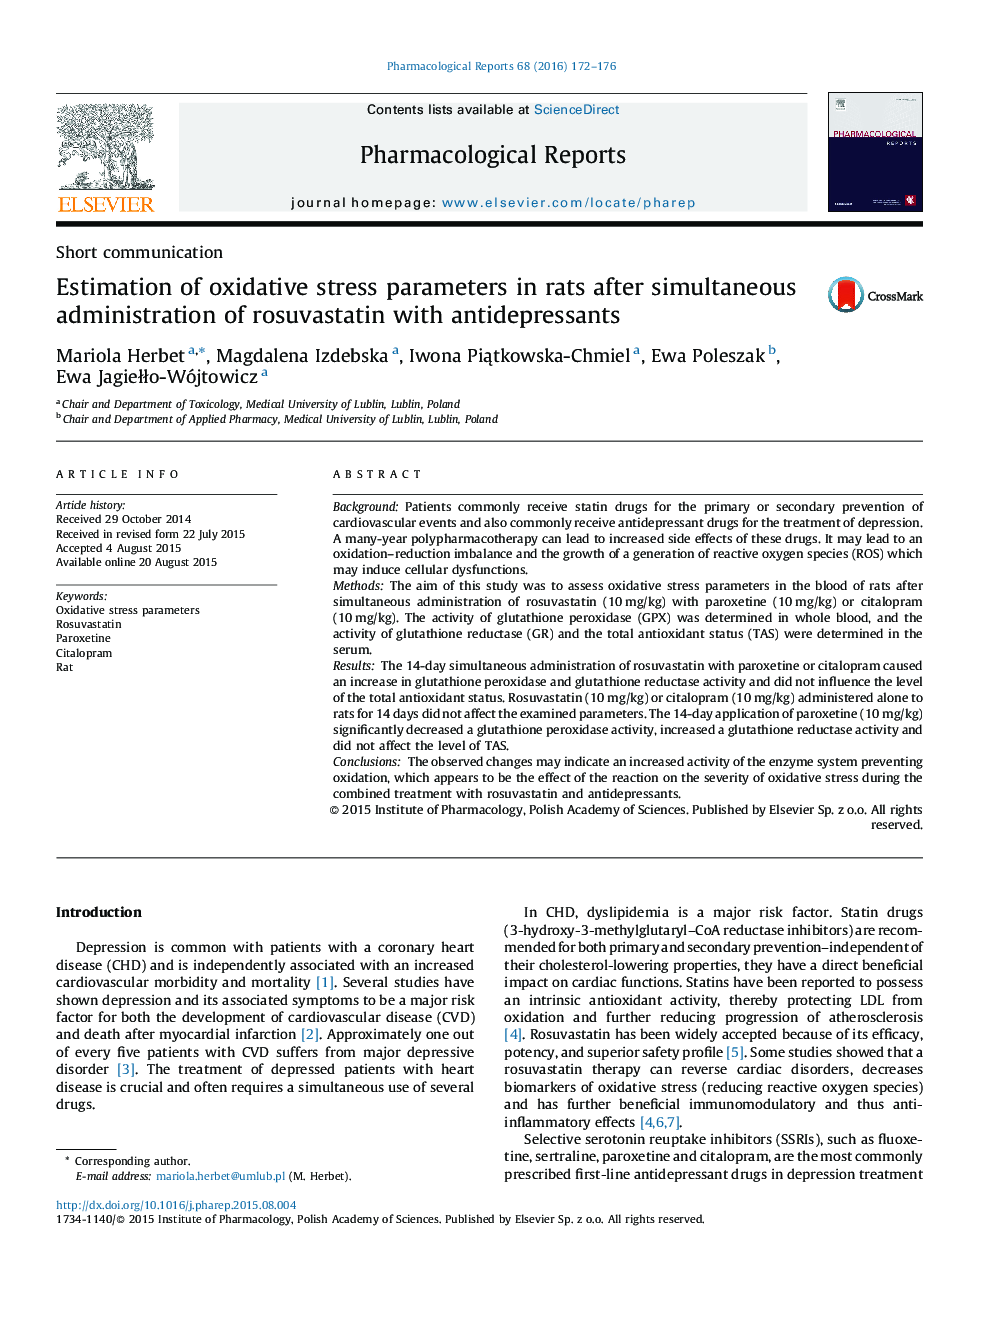 برآورد پارامترهای استرس اکسیداتیو در موش بعد از تجویز همزمان روزوواستاتین با داروهای ضدافسردگی